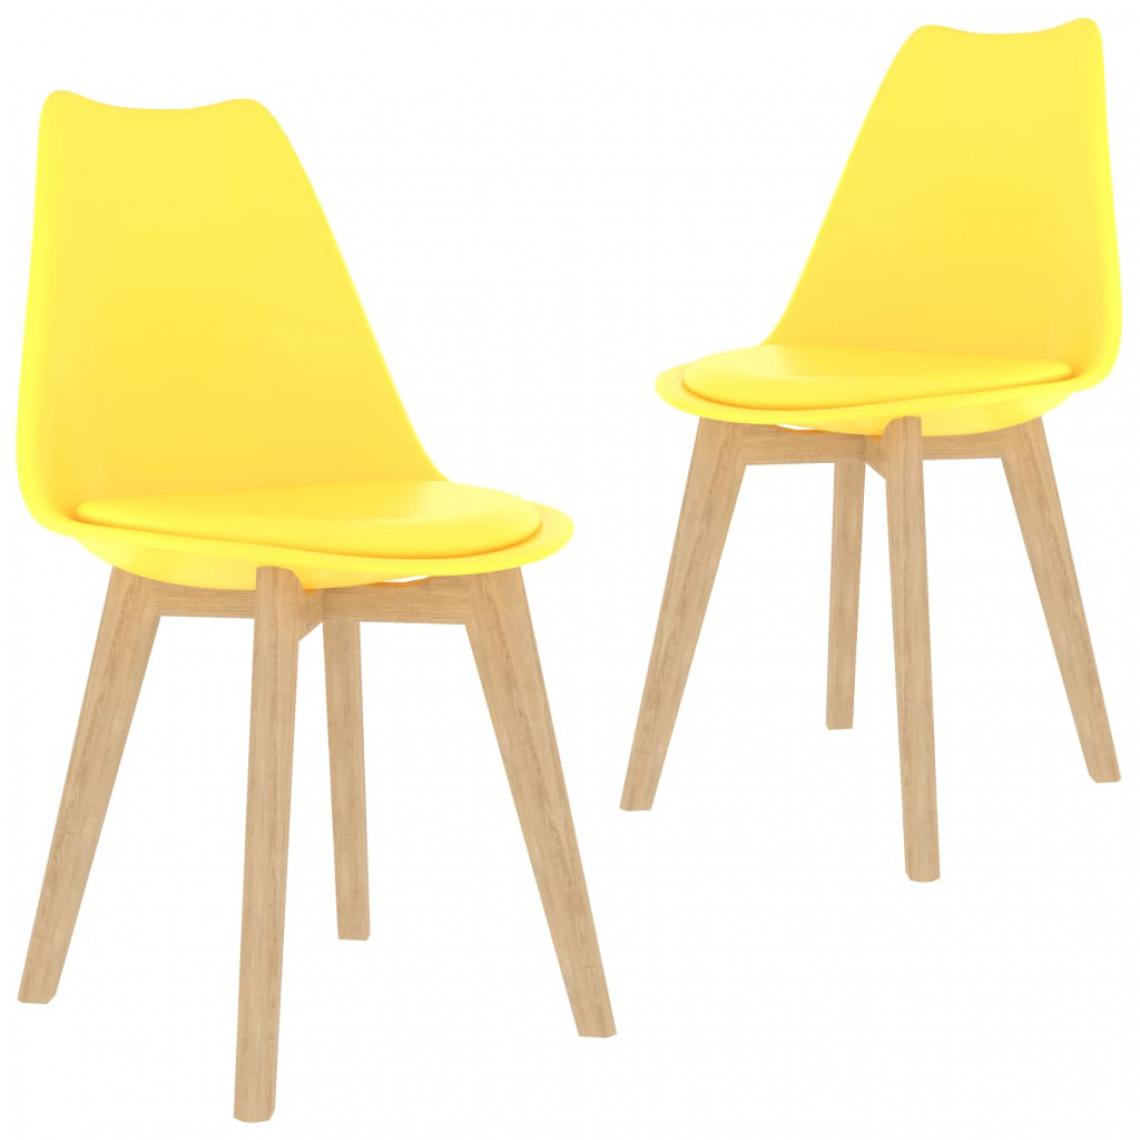 Chunhelife - Chunhelife Chaises de salle à manger 2 pcs Jaune Plastique - Chaises